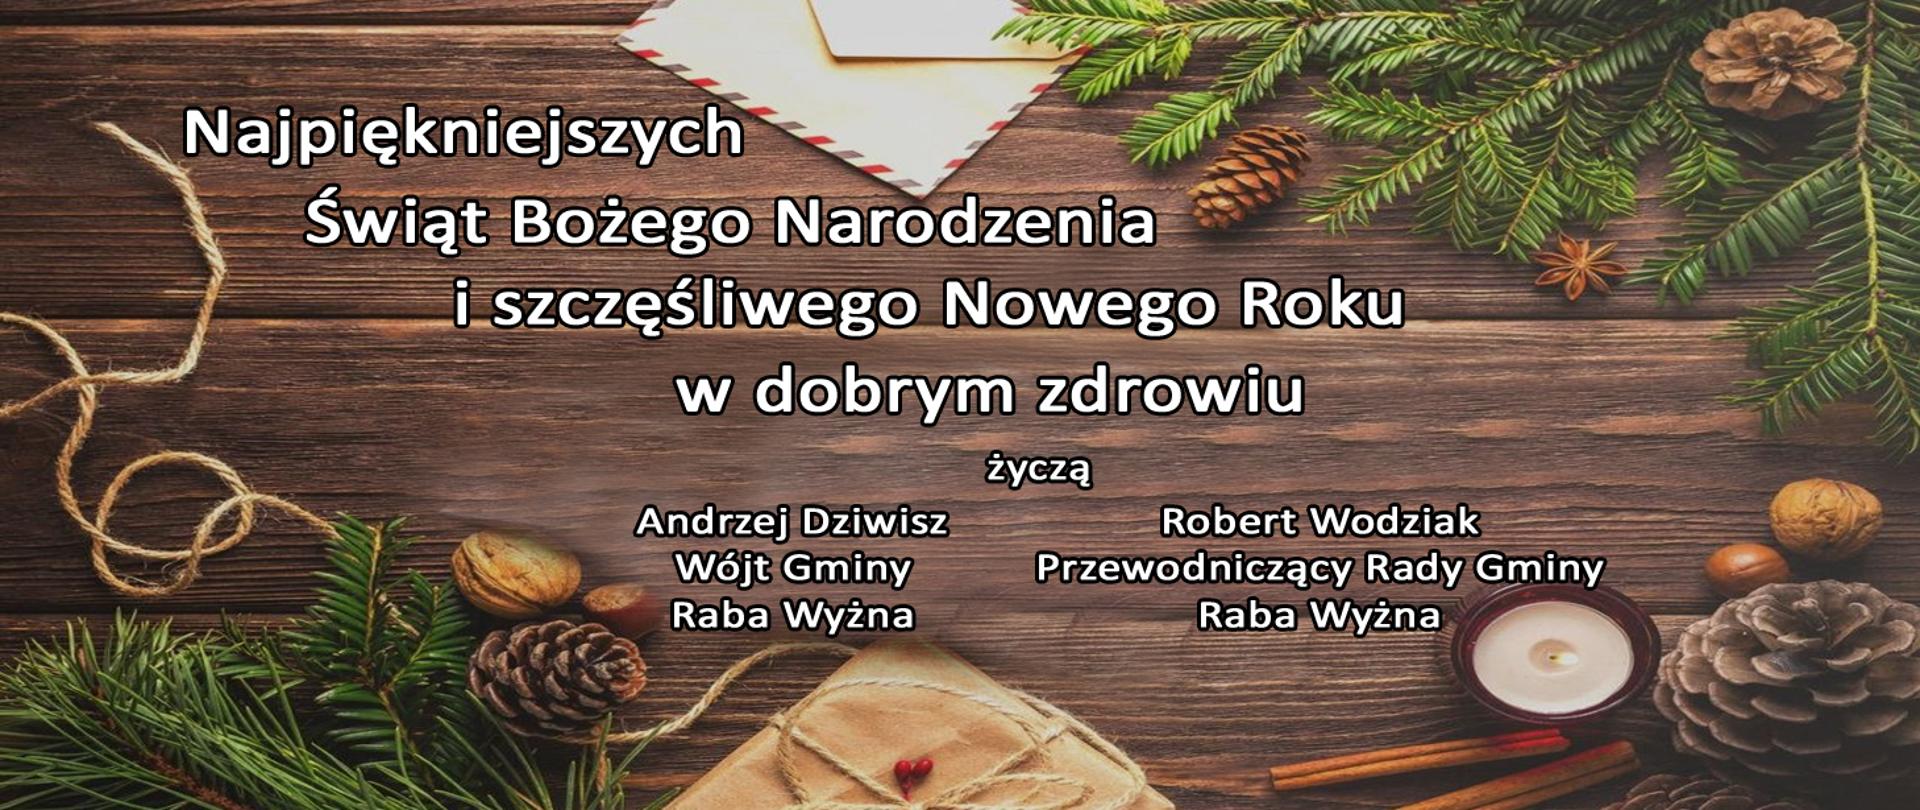 Najpiękniejszych Świąt Bożego Narodzenia i szczęśliwego Nowego Roku w dobrym zdrowiu życzą
Andrzej Dziwisz - Wójt Gminy Raba Wyżna
Robert Wodziak - Przewodniczący Rady Gminy Raba Wyżna